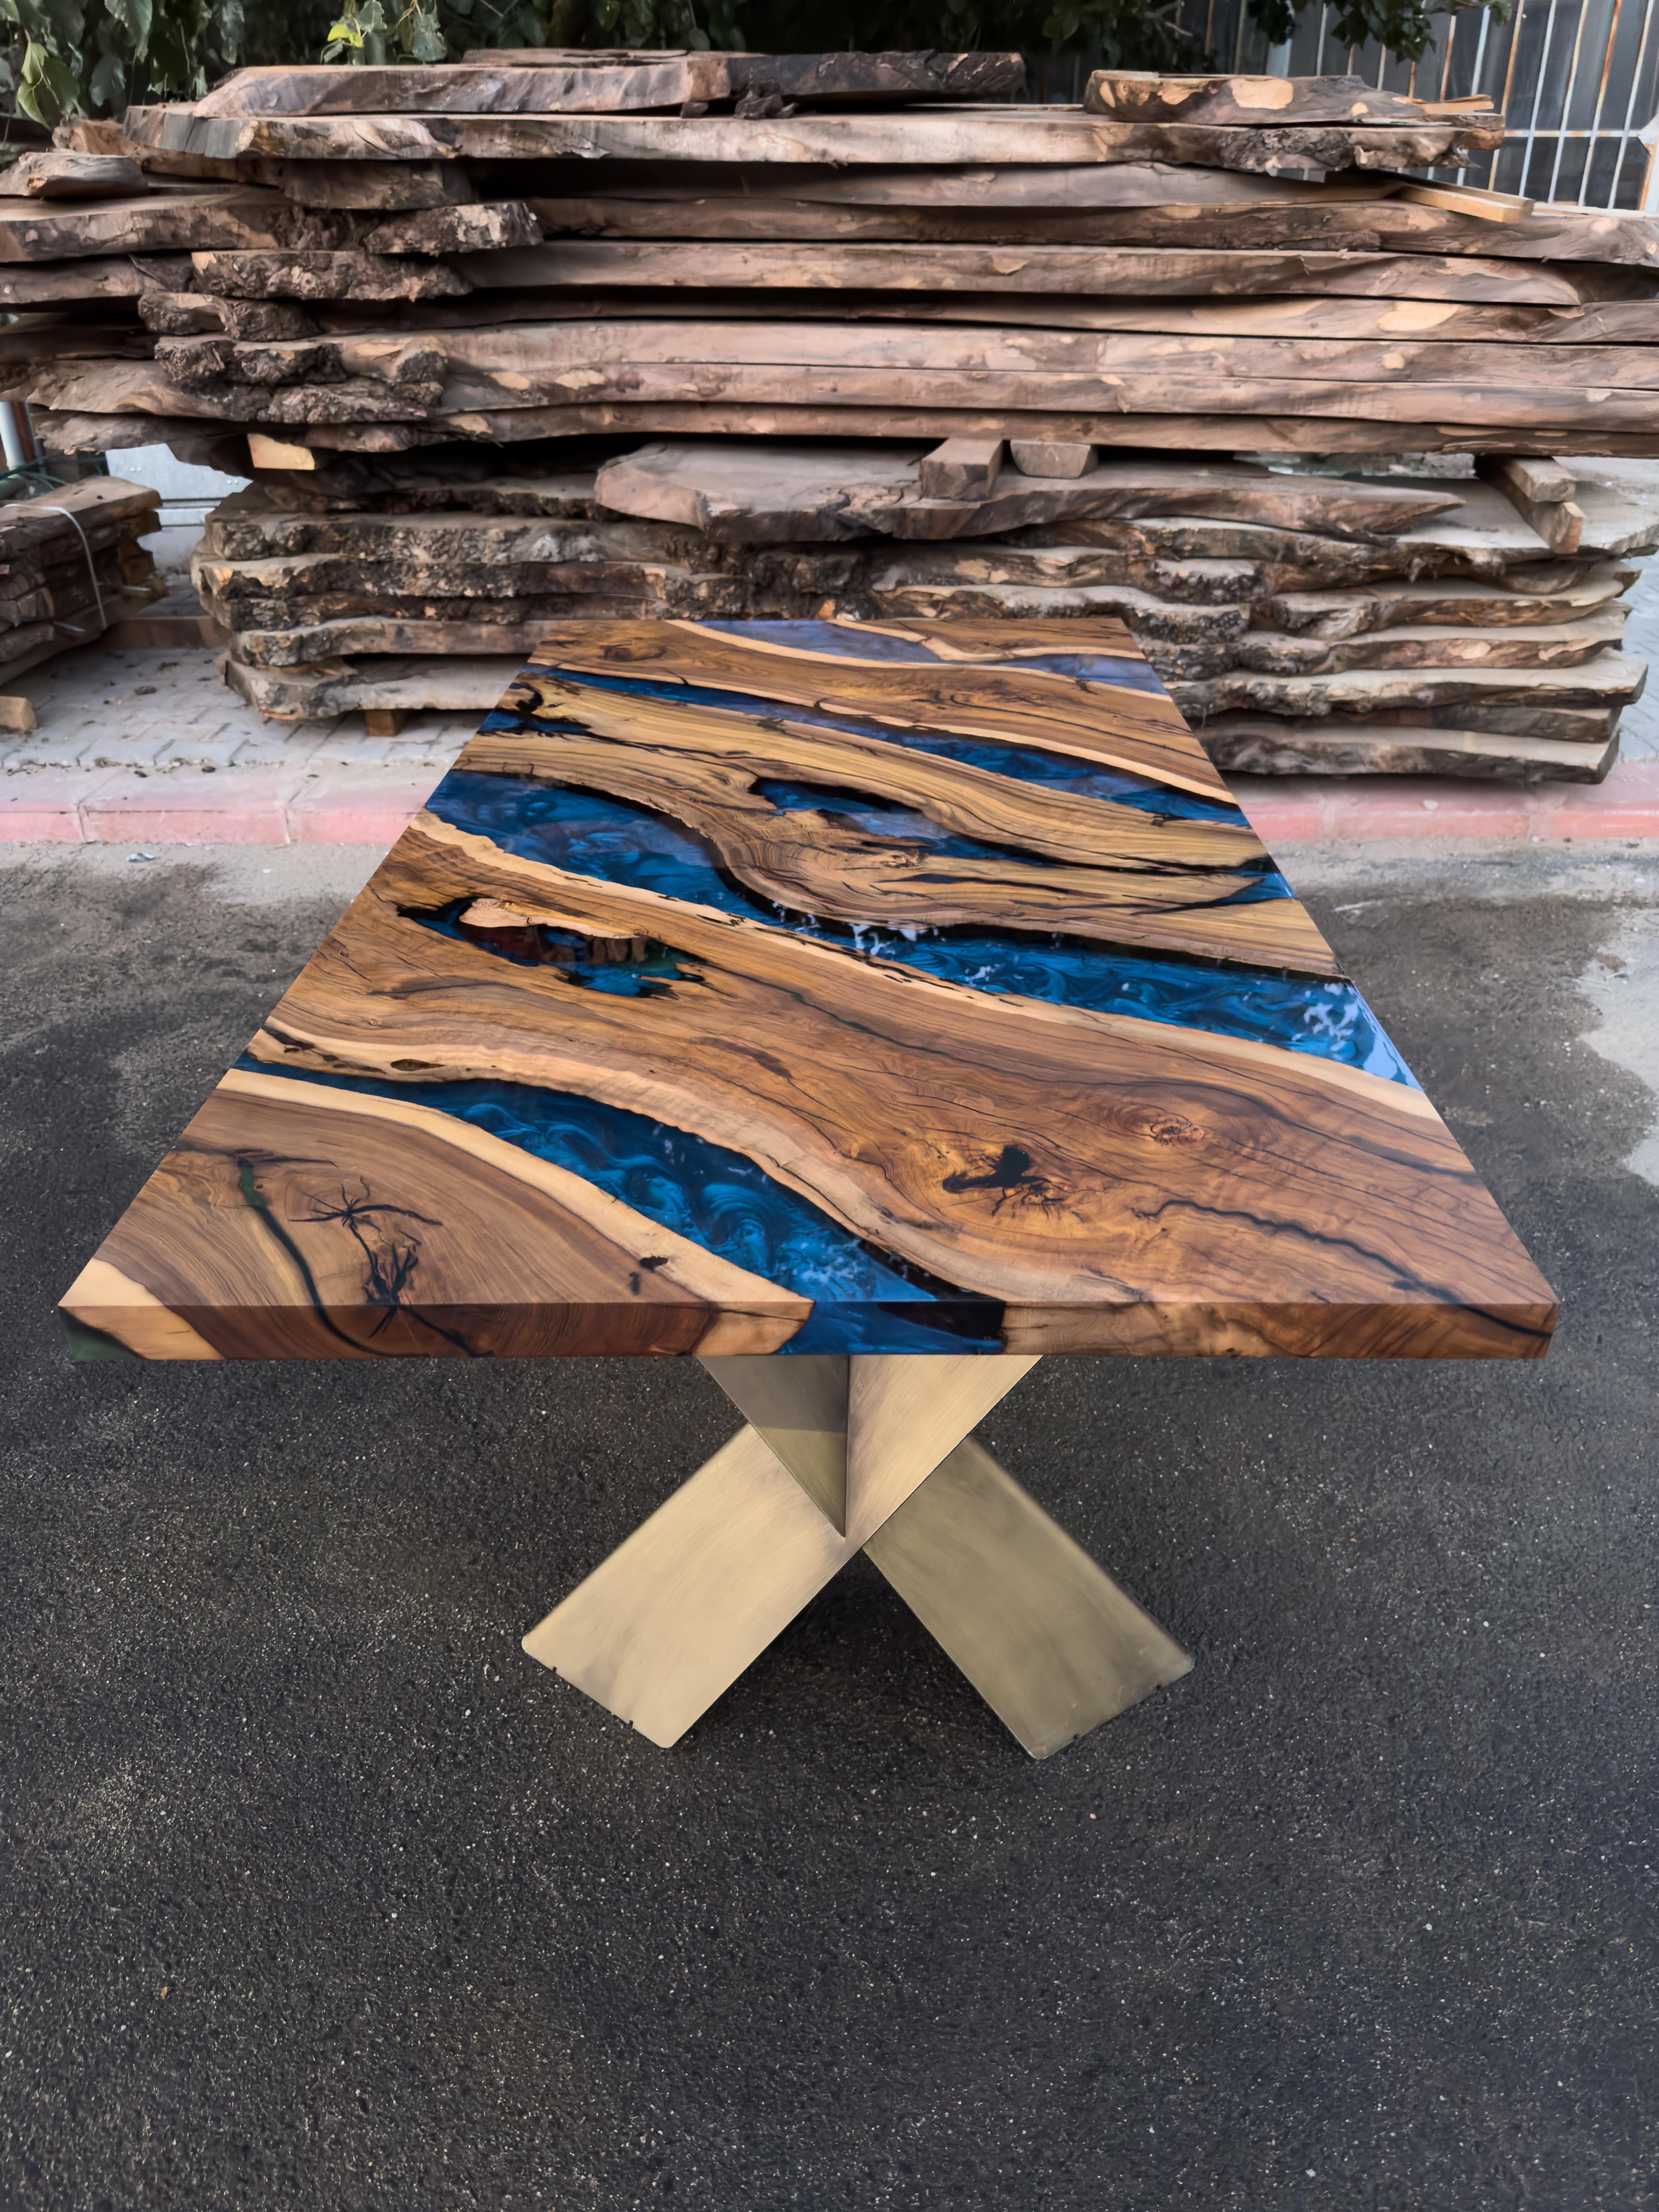 Table en époxy sur mesure en micocoulier

Cette superbe table est fabriquée en bois de micocoulier méditerranéen. La beauté unique des courbes naturelles du bois d'olivier combinées à l'époxy bleu se retrouve dans cette table.

Tous les bois ont